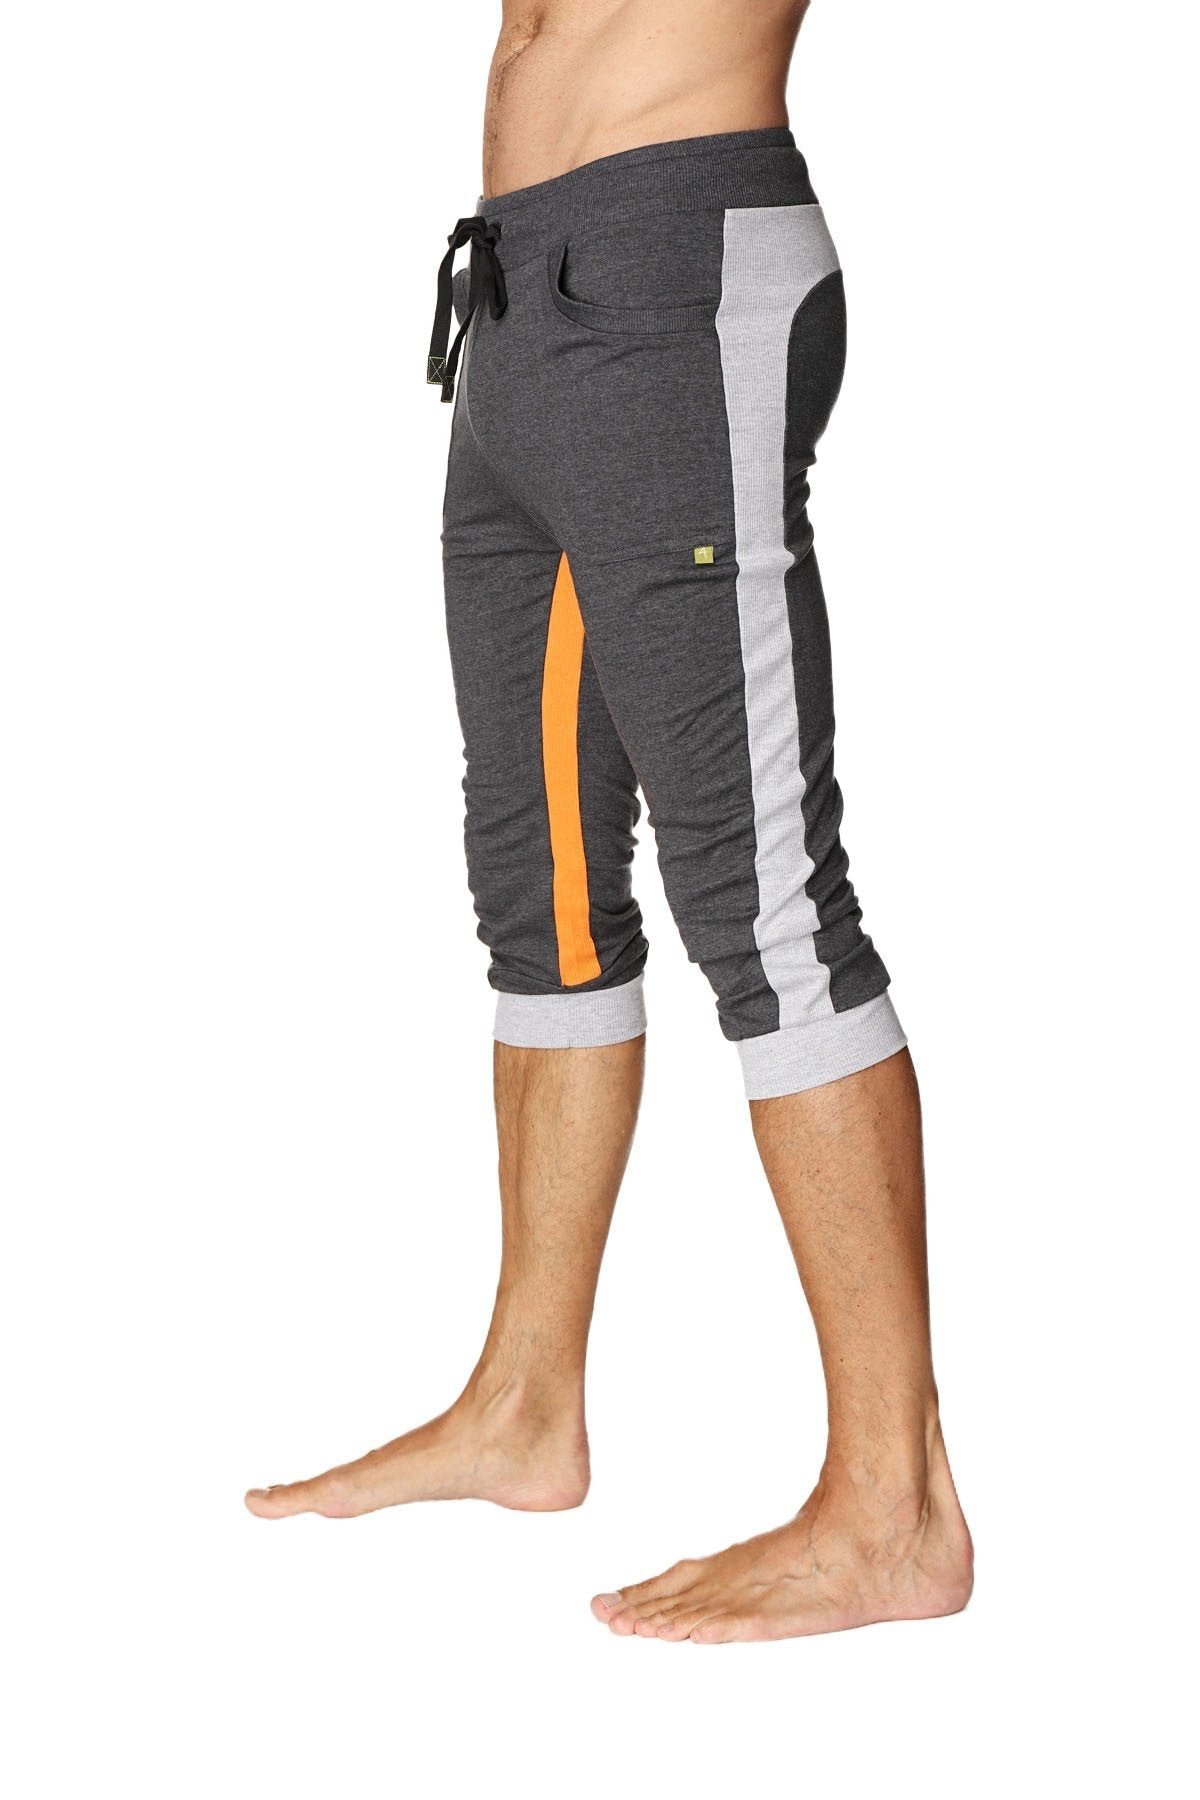 Ultra-Flex Tri-color Cuffed Yoga Pant (Charcoal w/Grey & Orange)